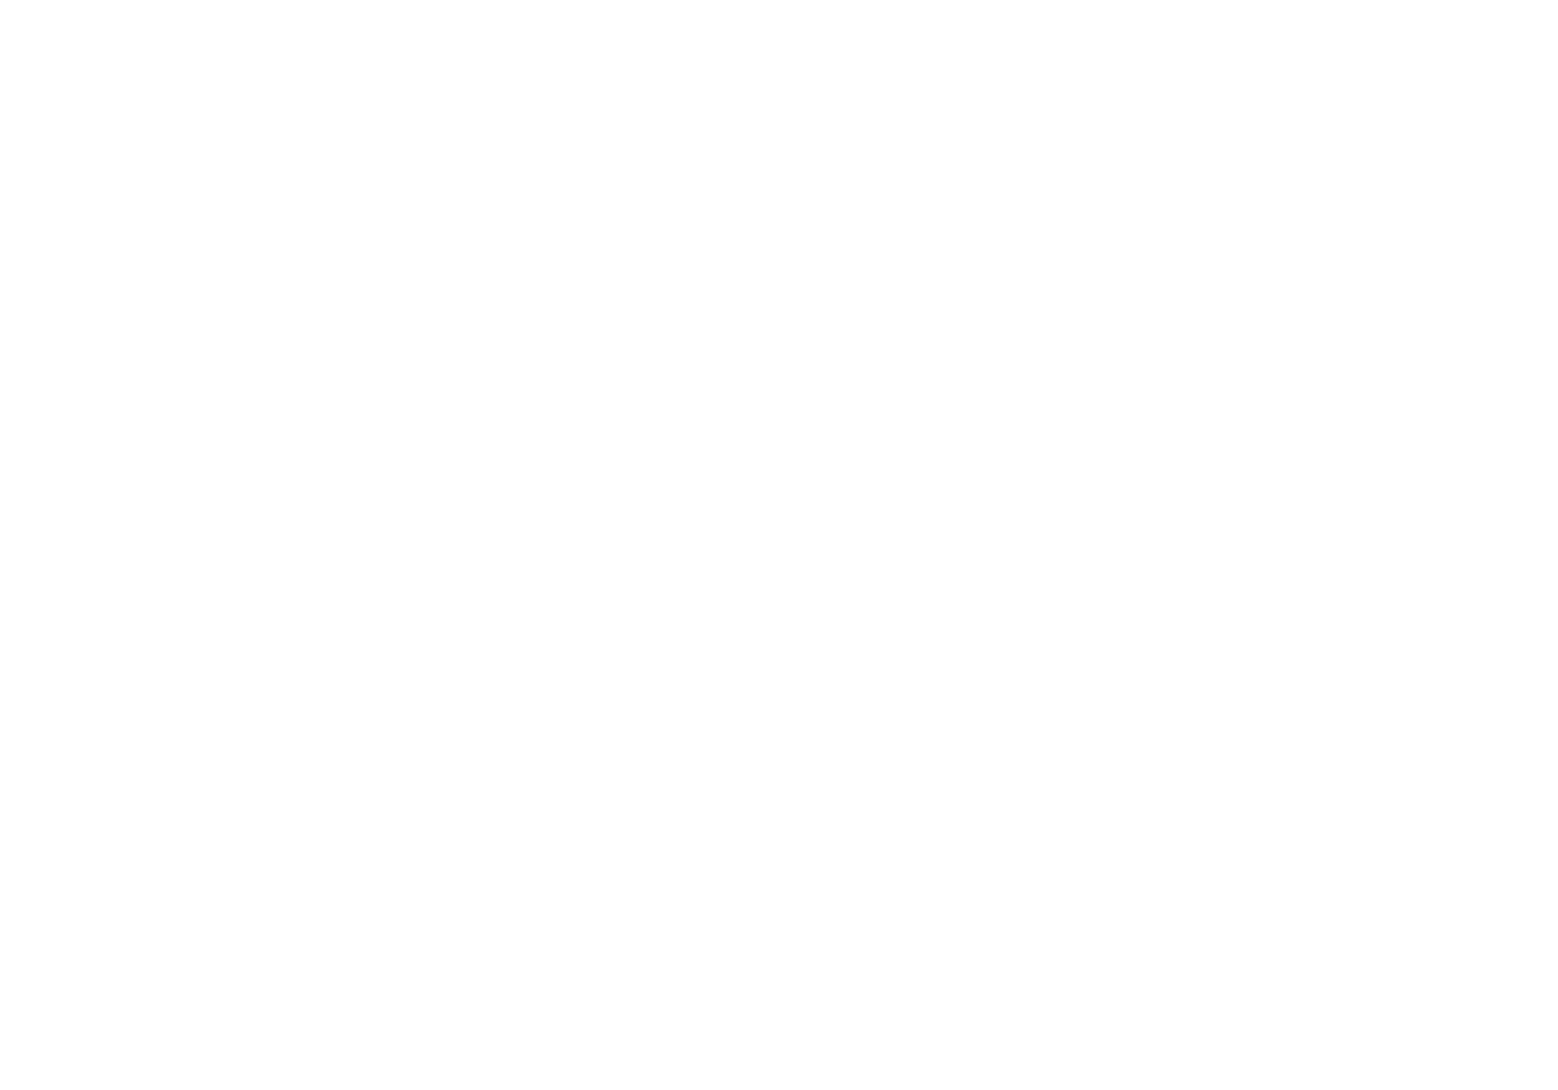 Brunswick Corporation logo pour fonds sombres (PNG transparent)